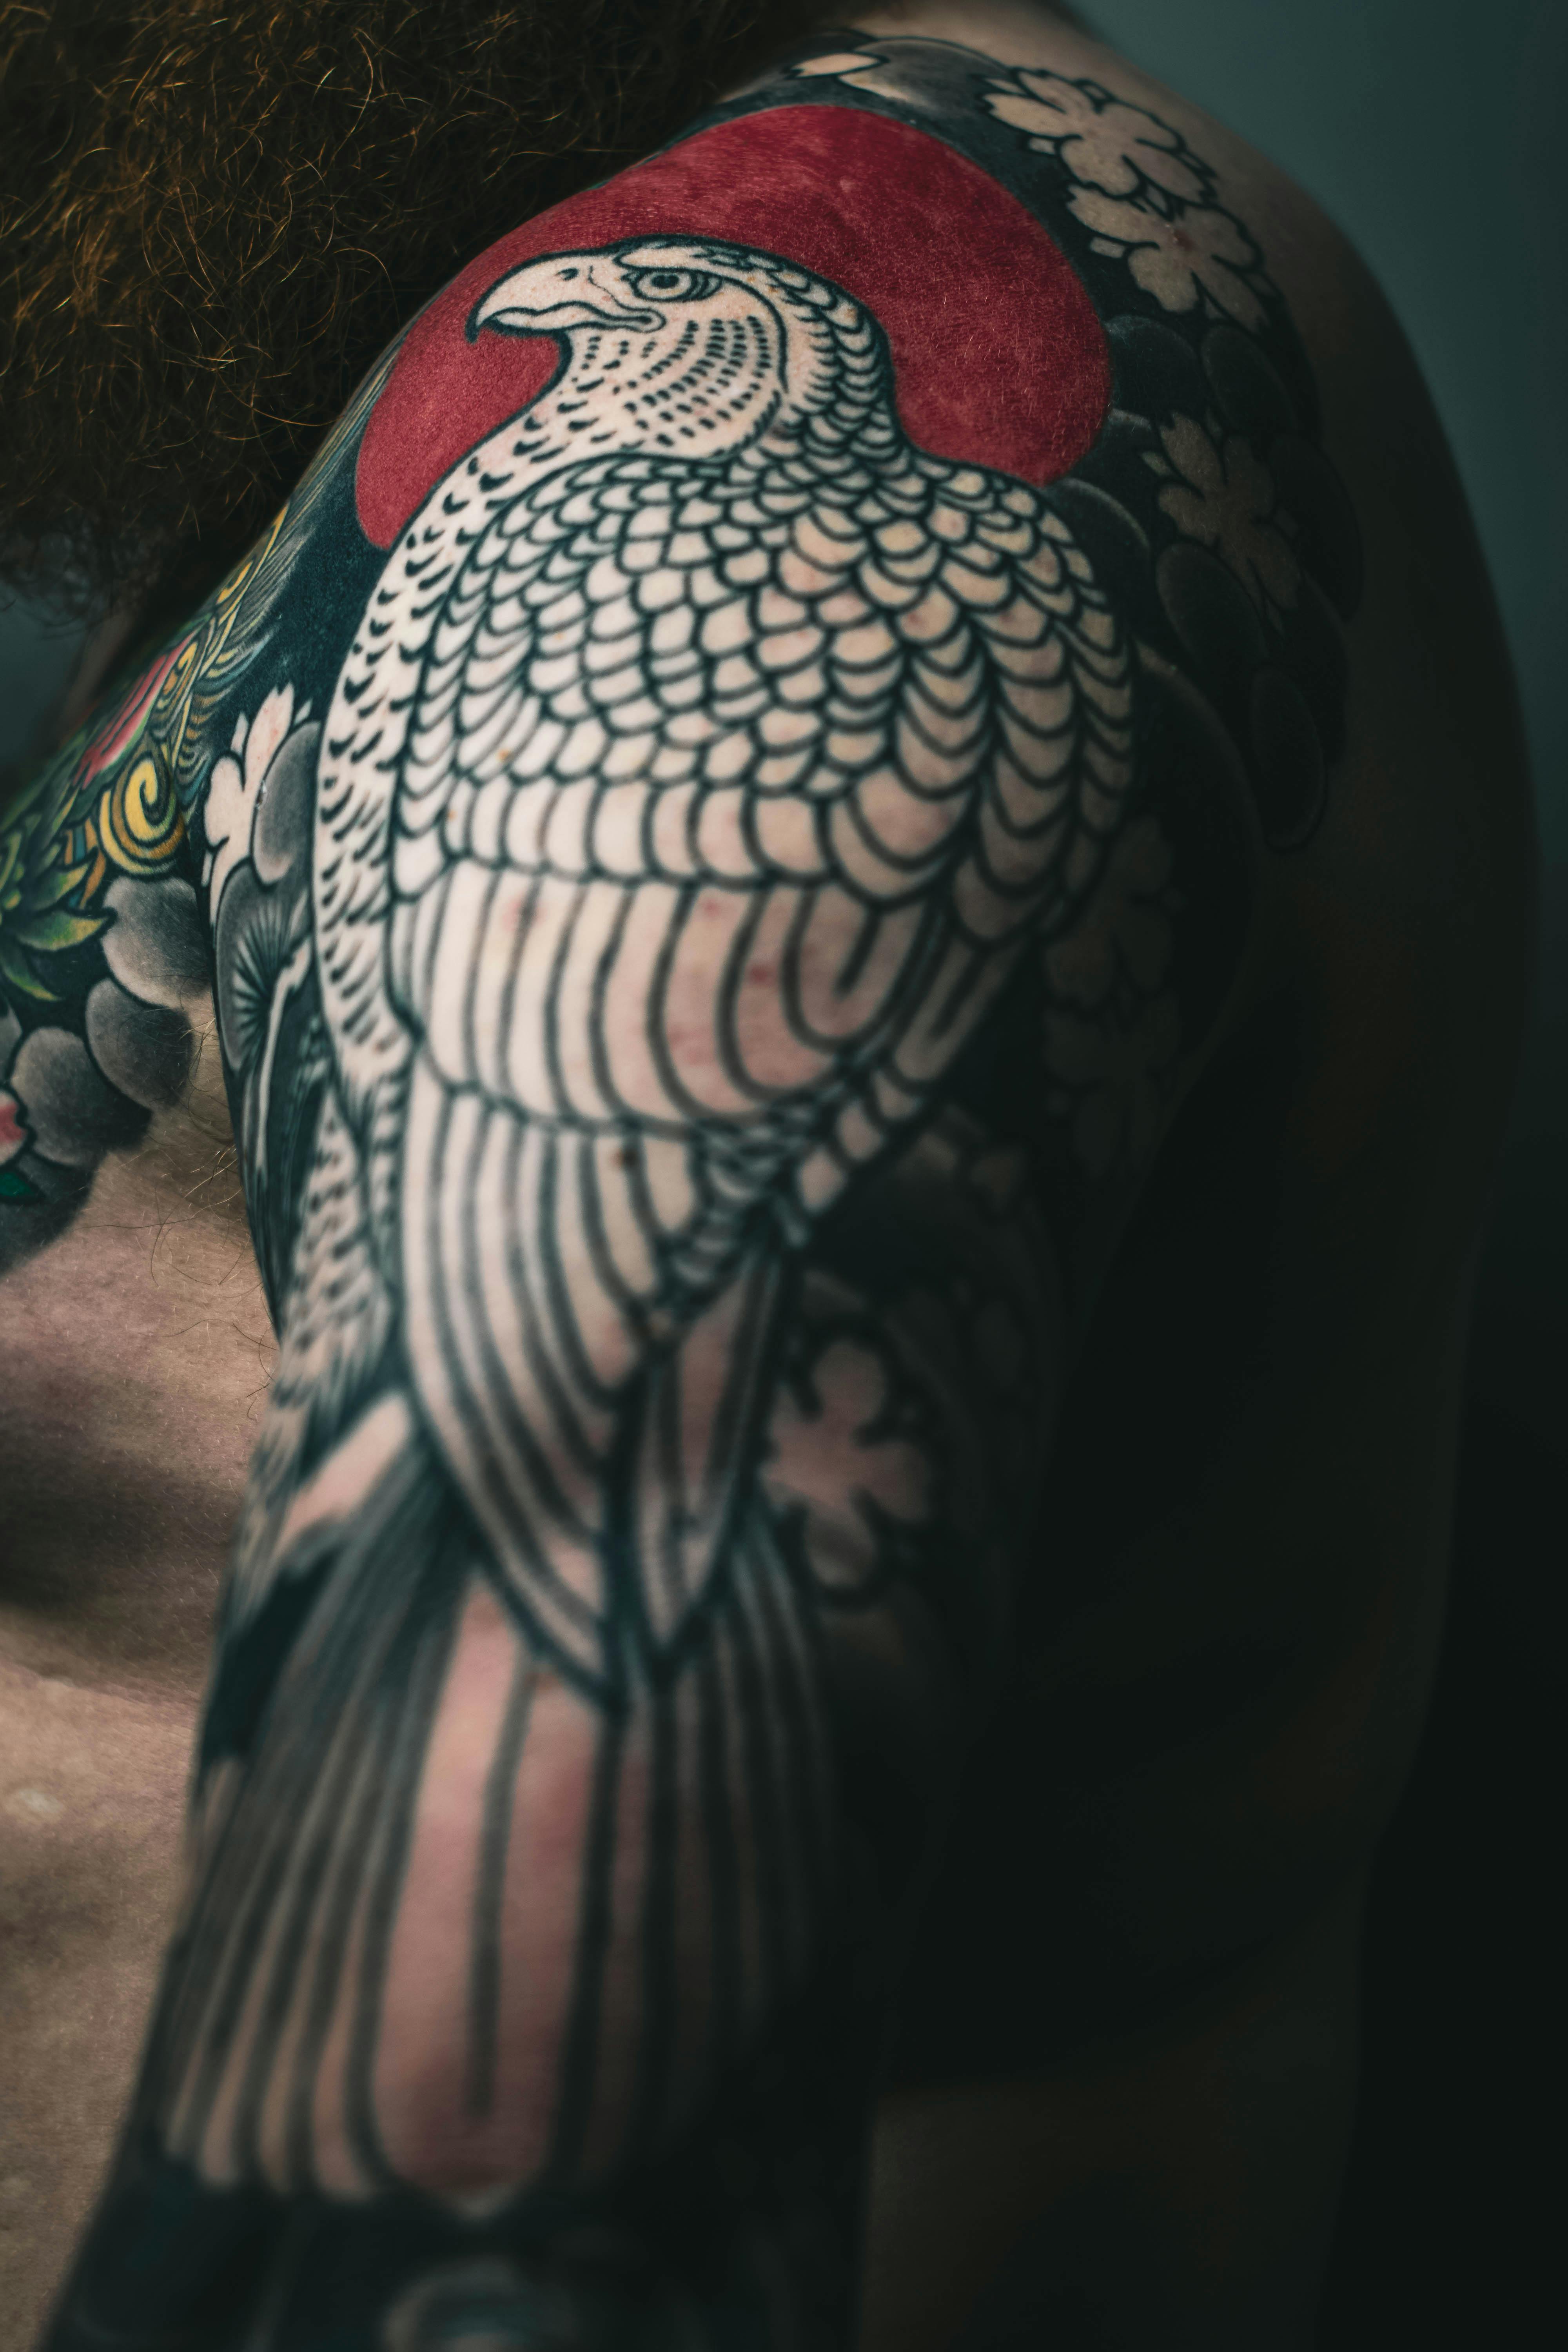 Tattoo uploaded by Nate • 𝙄𝙂: 𝙣𝙖𝙩𝙚_𝙩𝙝𝙖𝙞𝙡𝙖𝙣𝙙 🌿 Blackwork small  hawk tattoo by Thai tattoo artist in Chiang Mai • Tattoodo